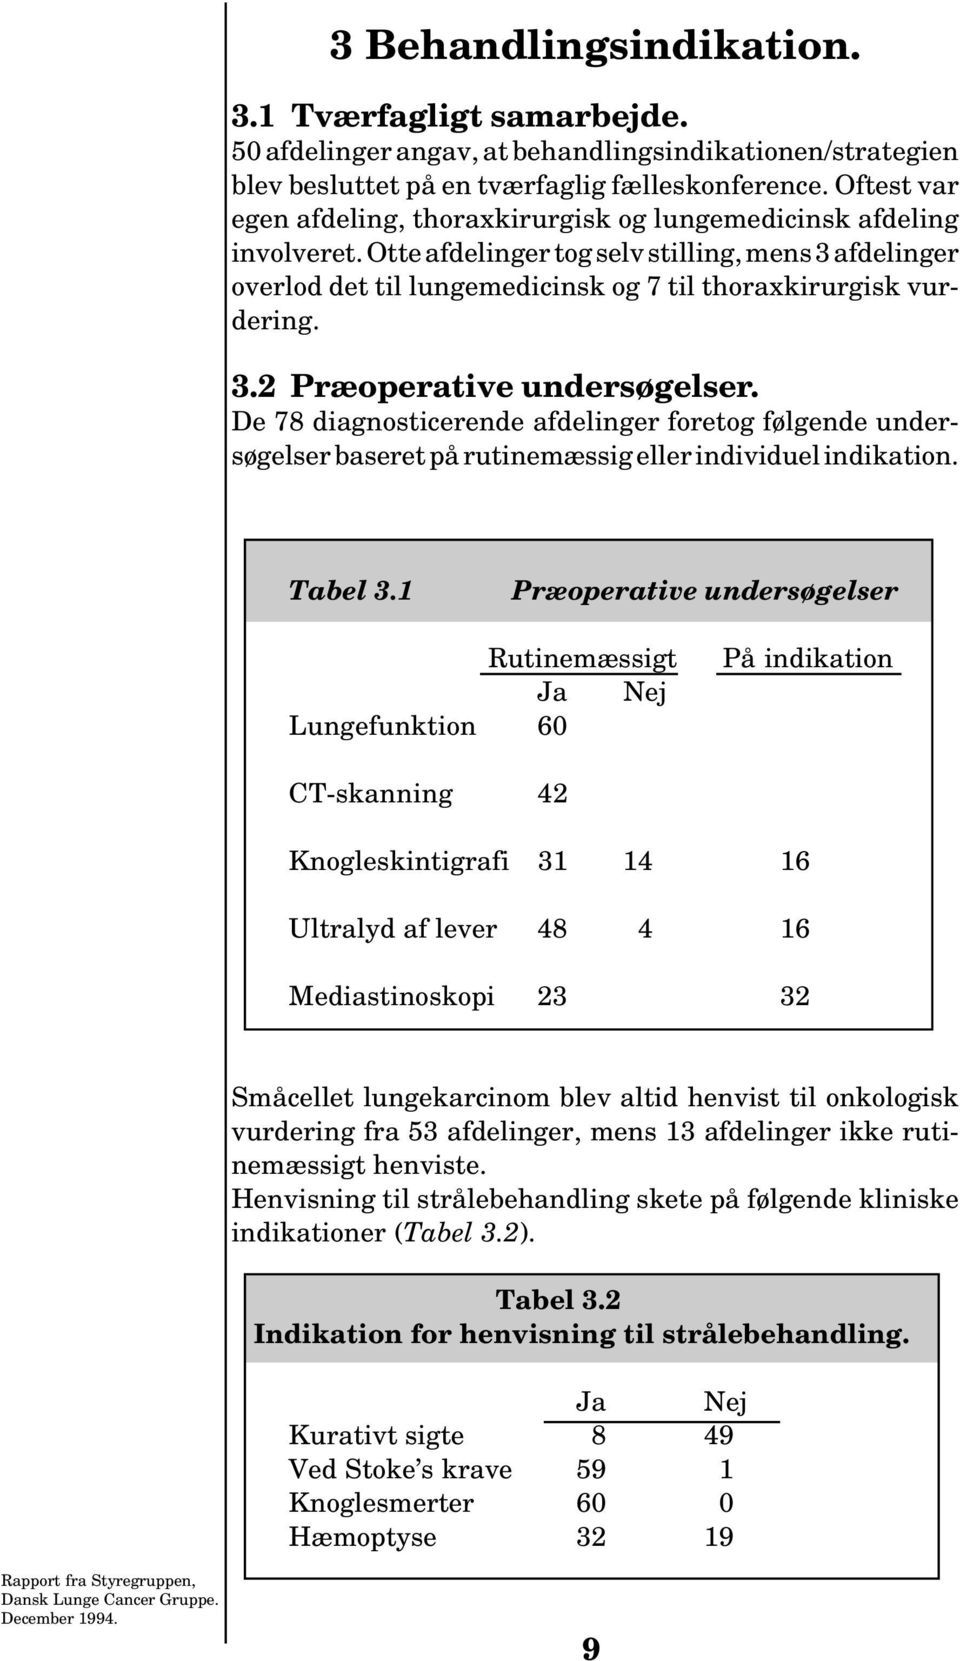 3.2 Præoperative undersøgelser. De 78 diagnosticerende afdelinger foretog følgende undersøgelser baseret på rutinemæssig eller individuel indikation. Tabel 3.